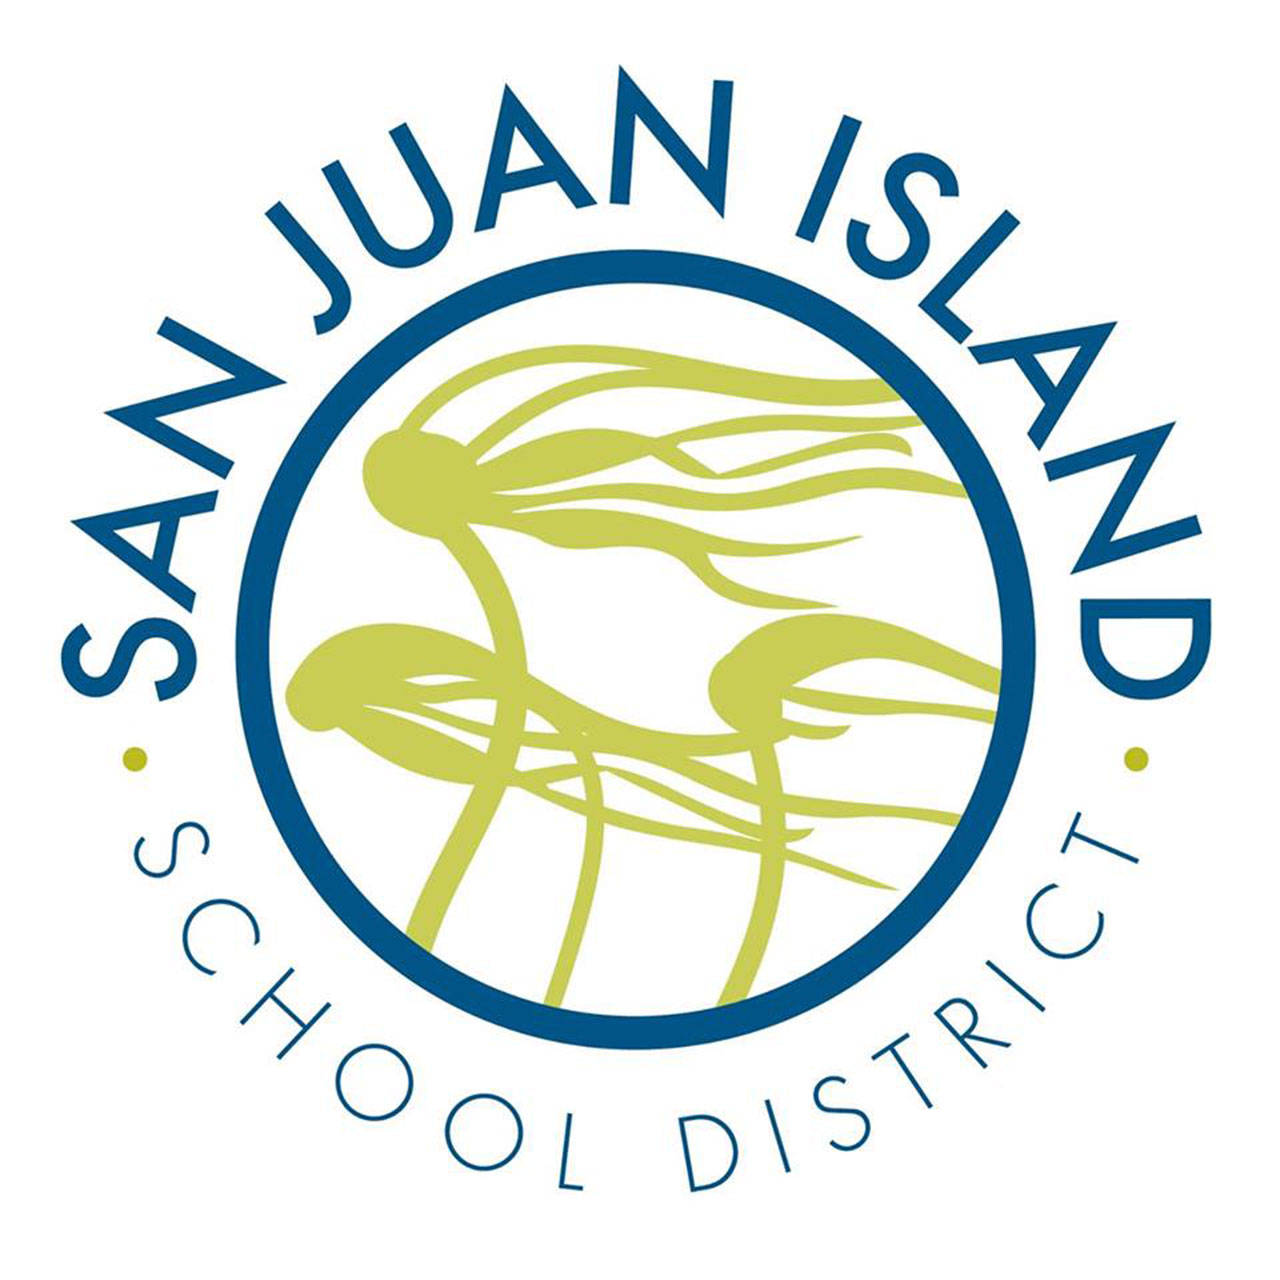 San Juan Island School District Board members to attend orientation